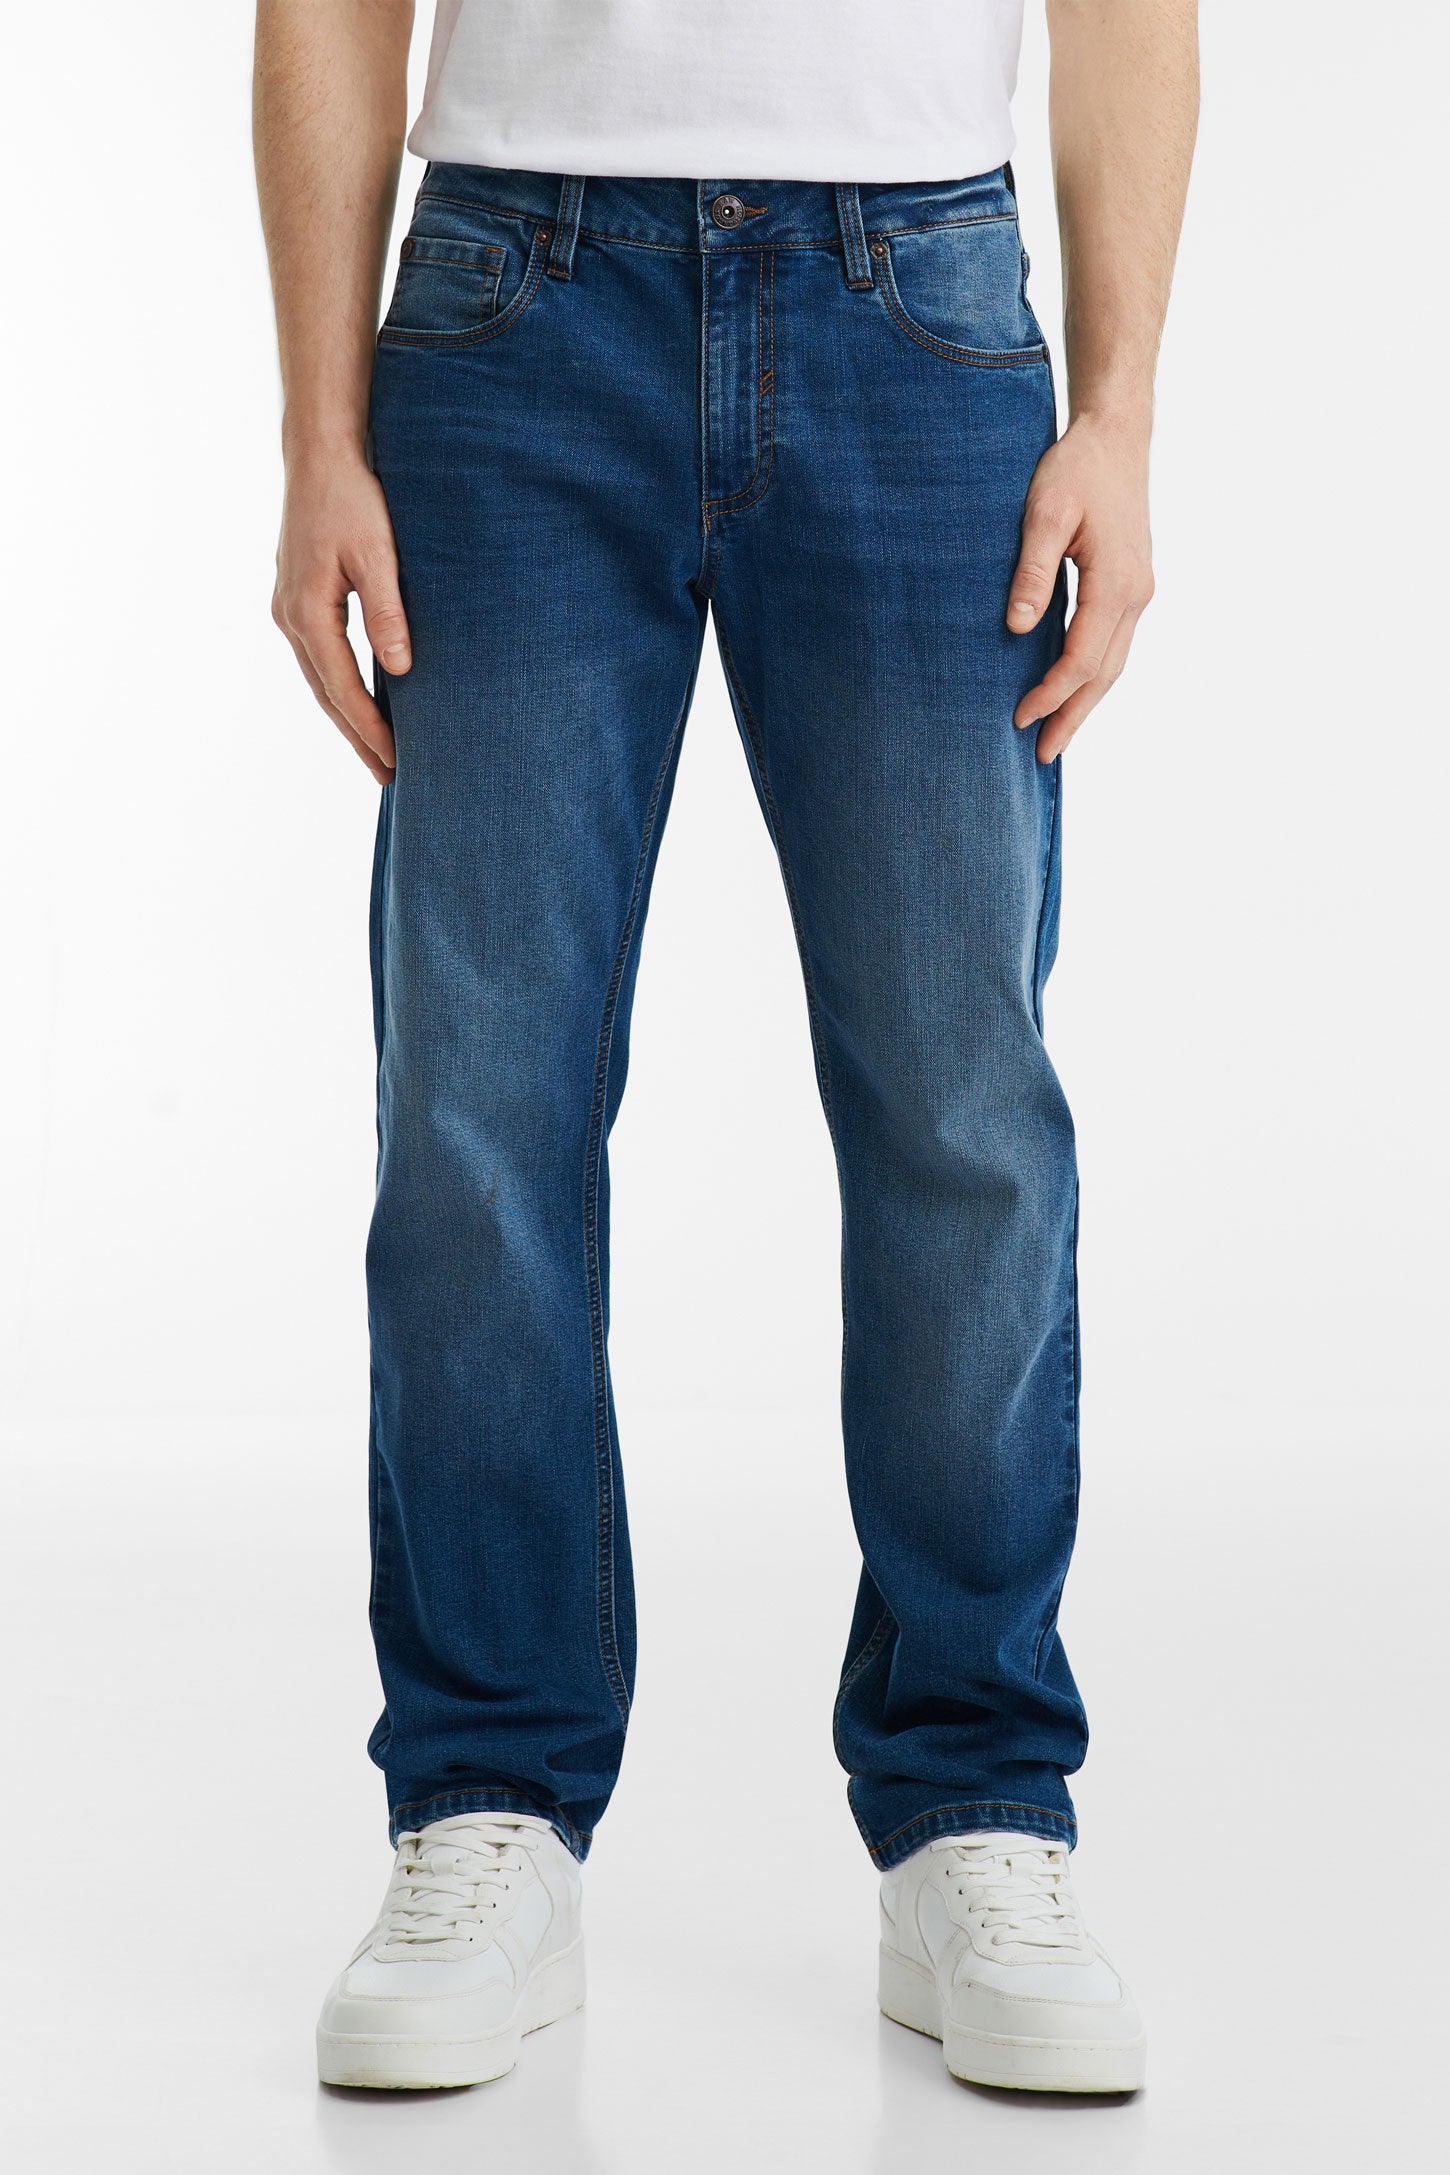 Jeans 5 poches coupe régulière 30'' - Homme && MARIN